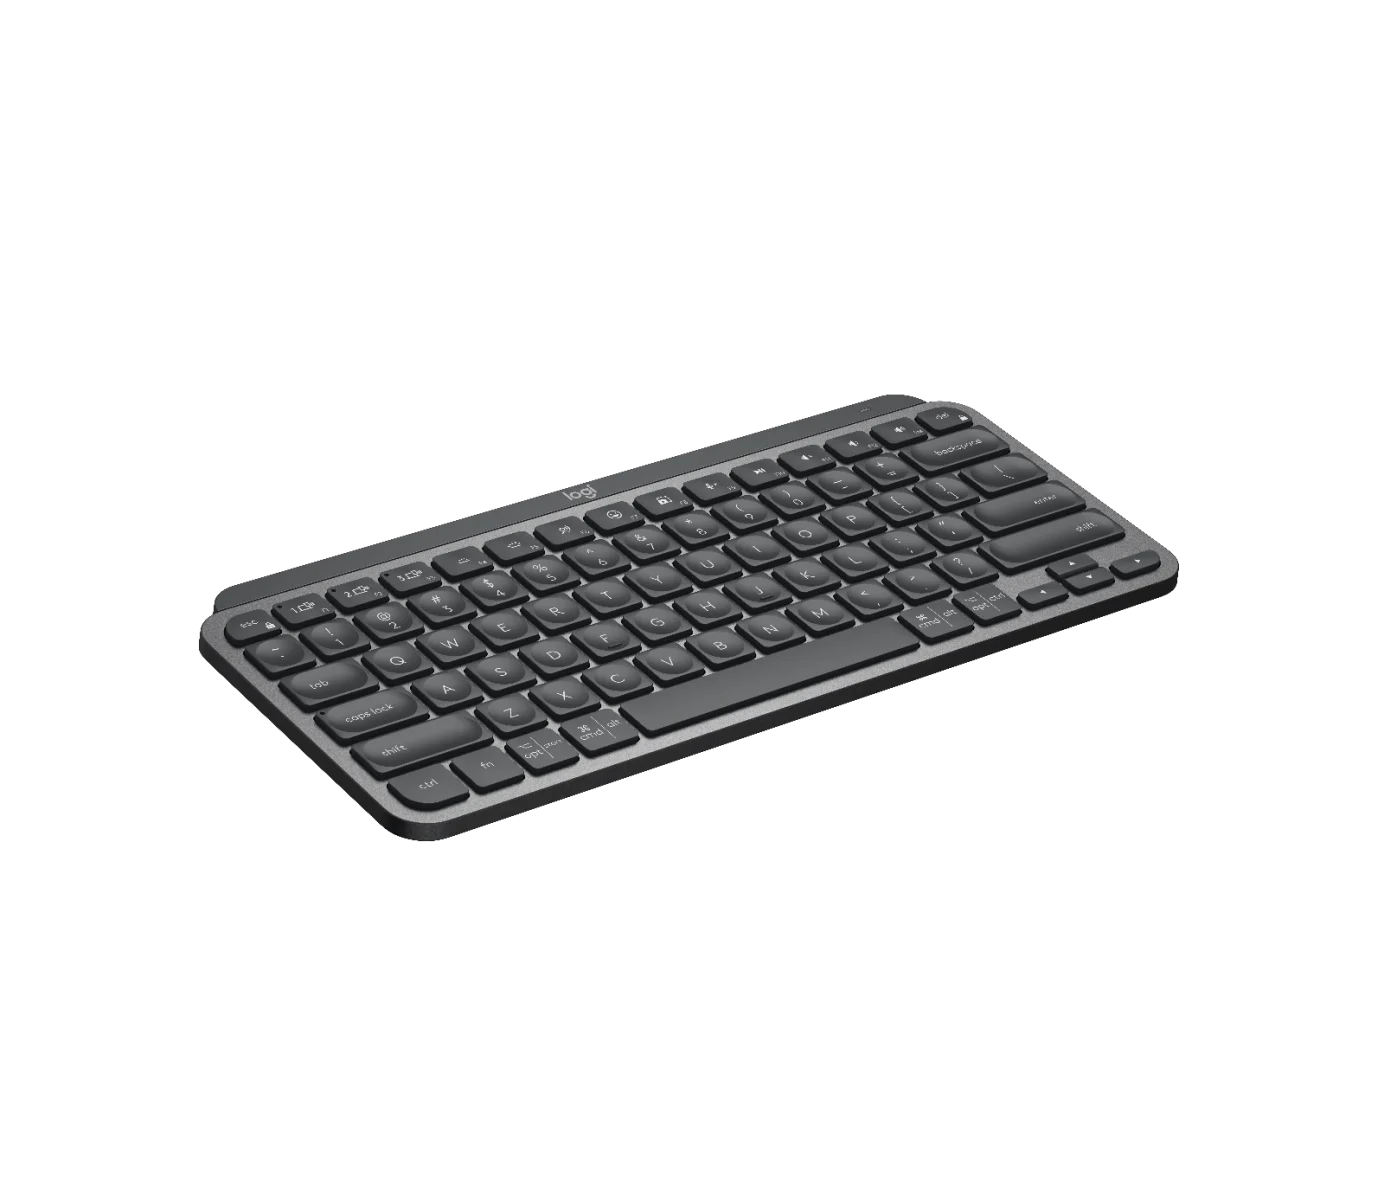 Logitech MX Keys Mini - Minimalist Wireless Illuminated Keyboard